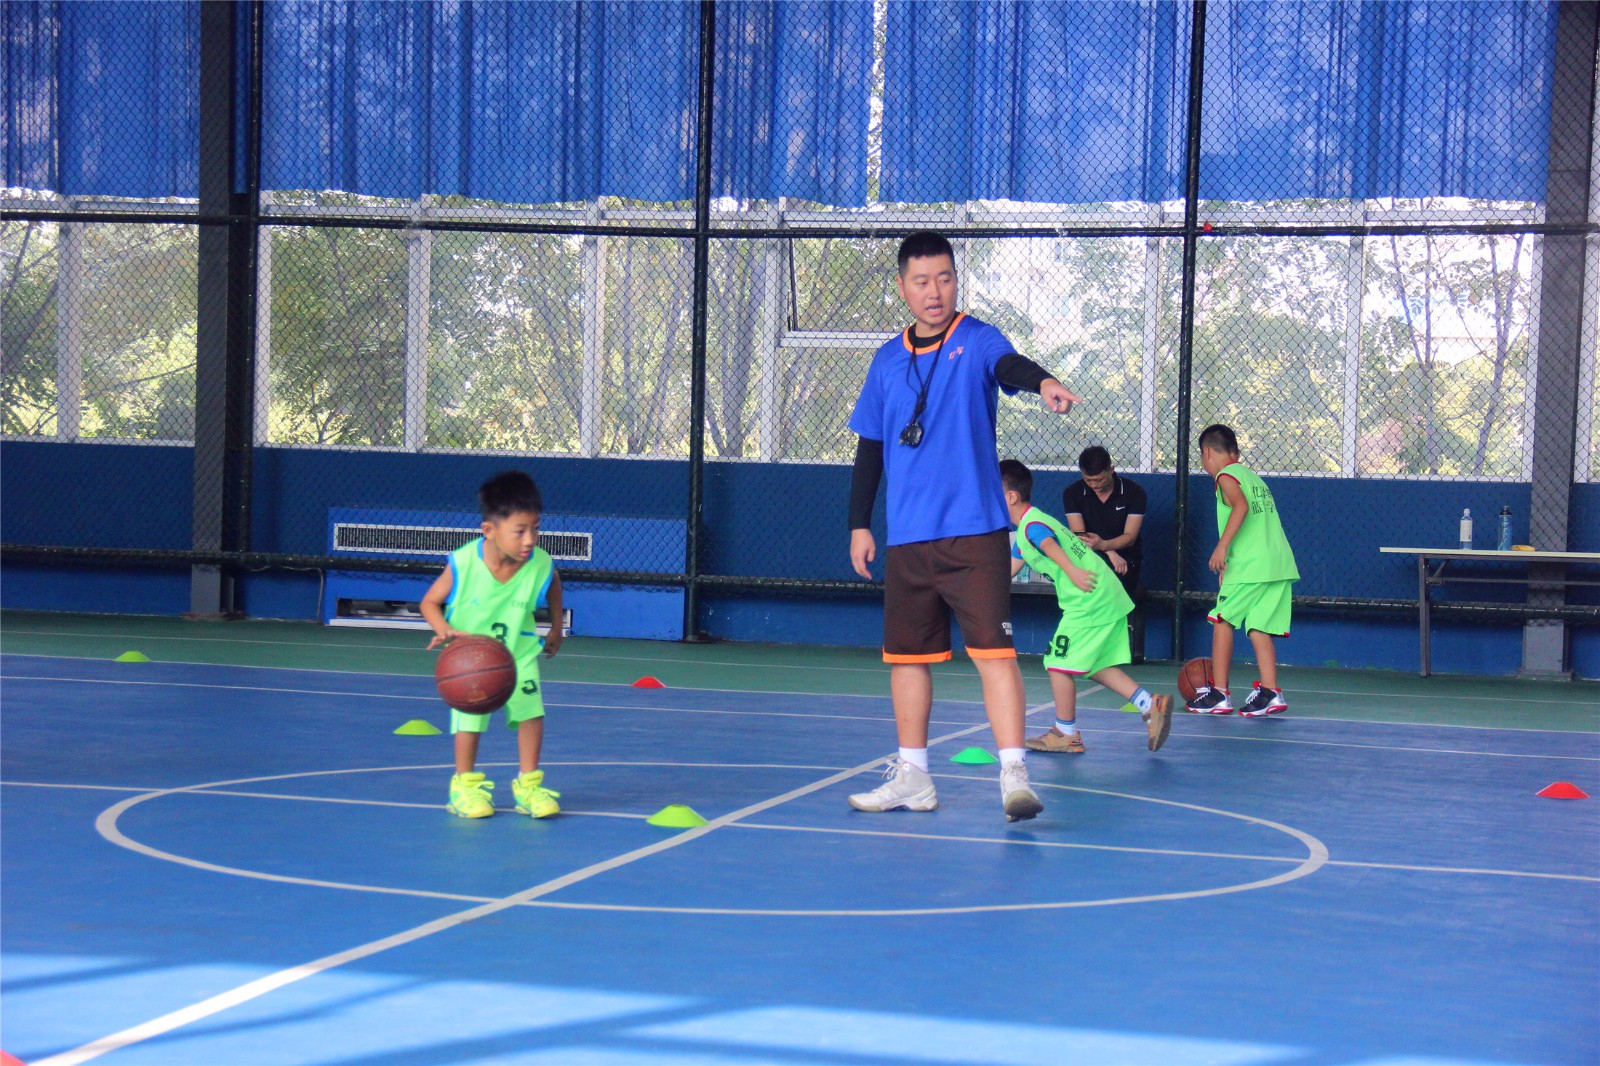 亿泽辉体育,中国青少年篮球培训行业领导品牌